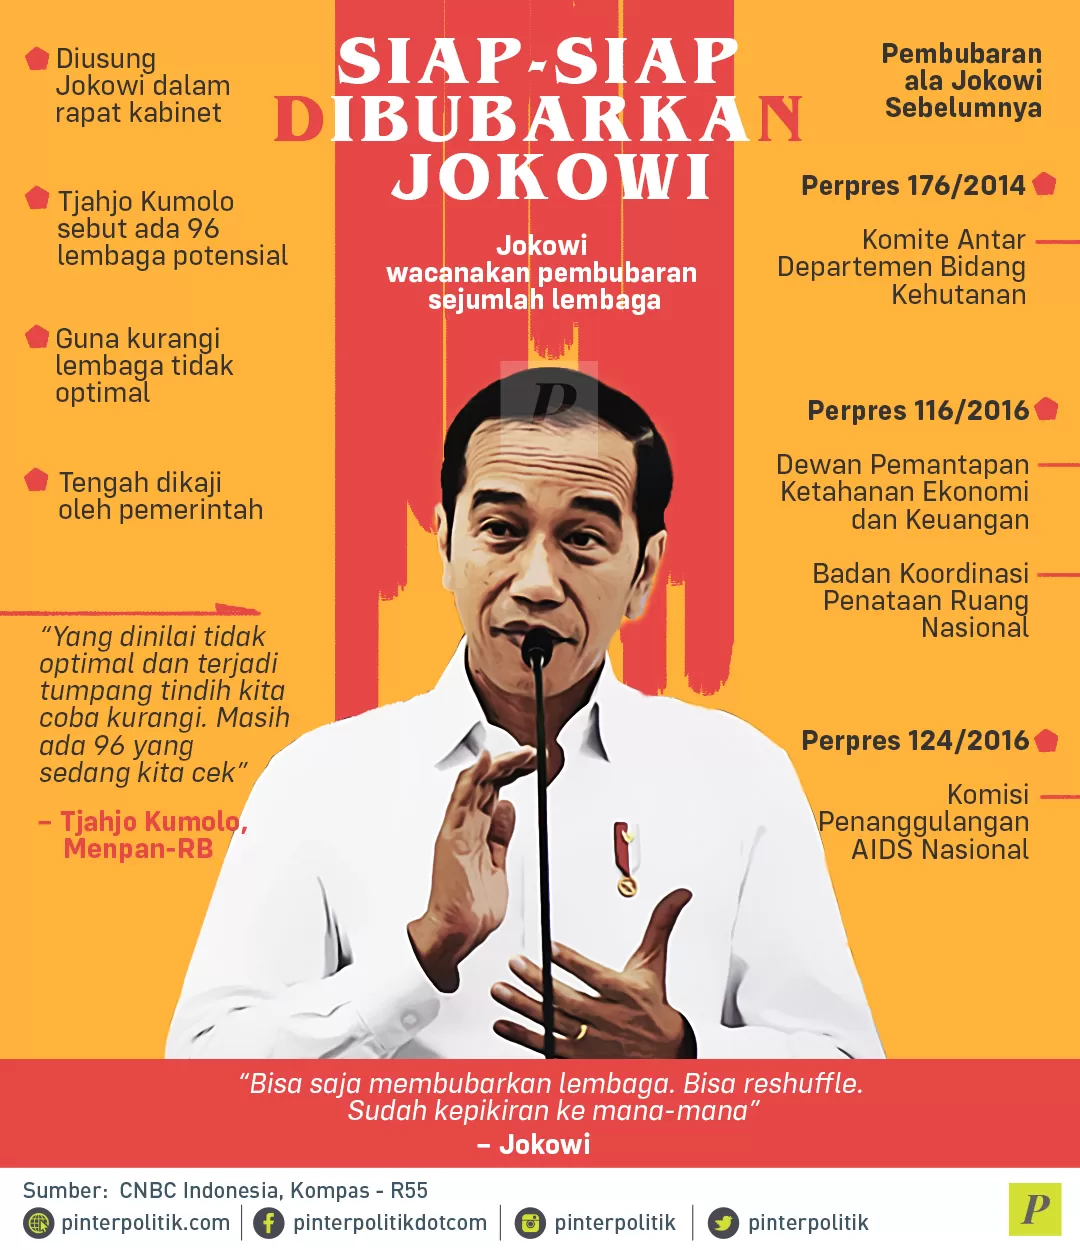 Siap-siap Dibubarkan Jokowi